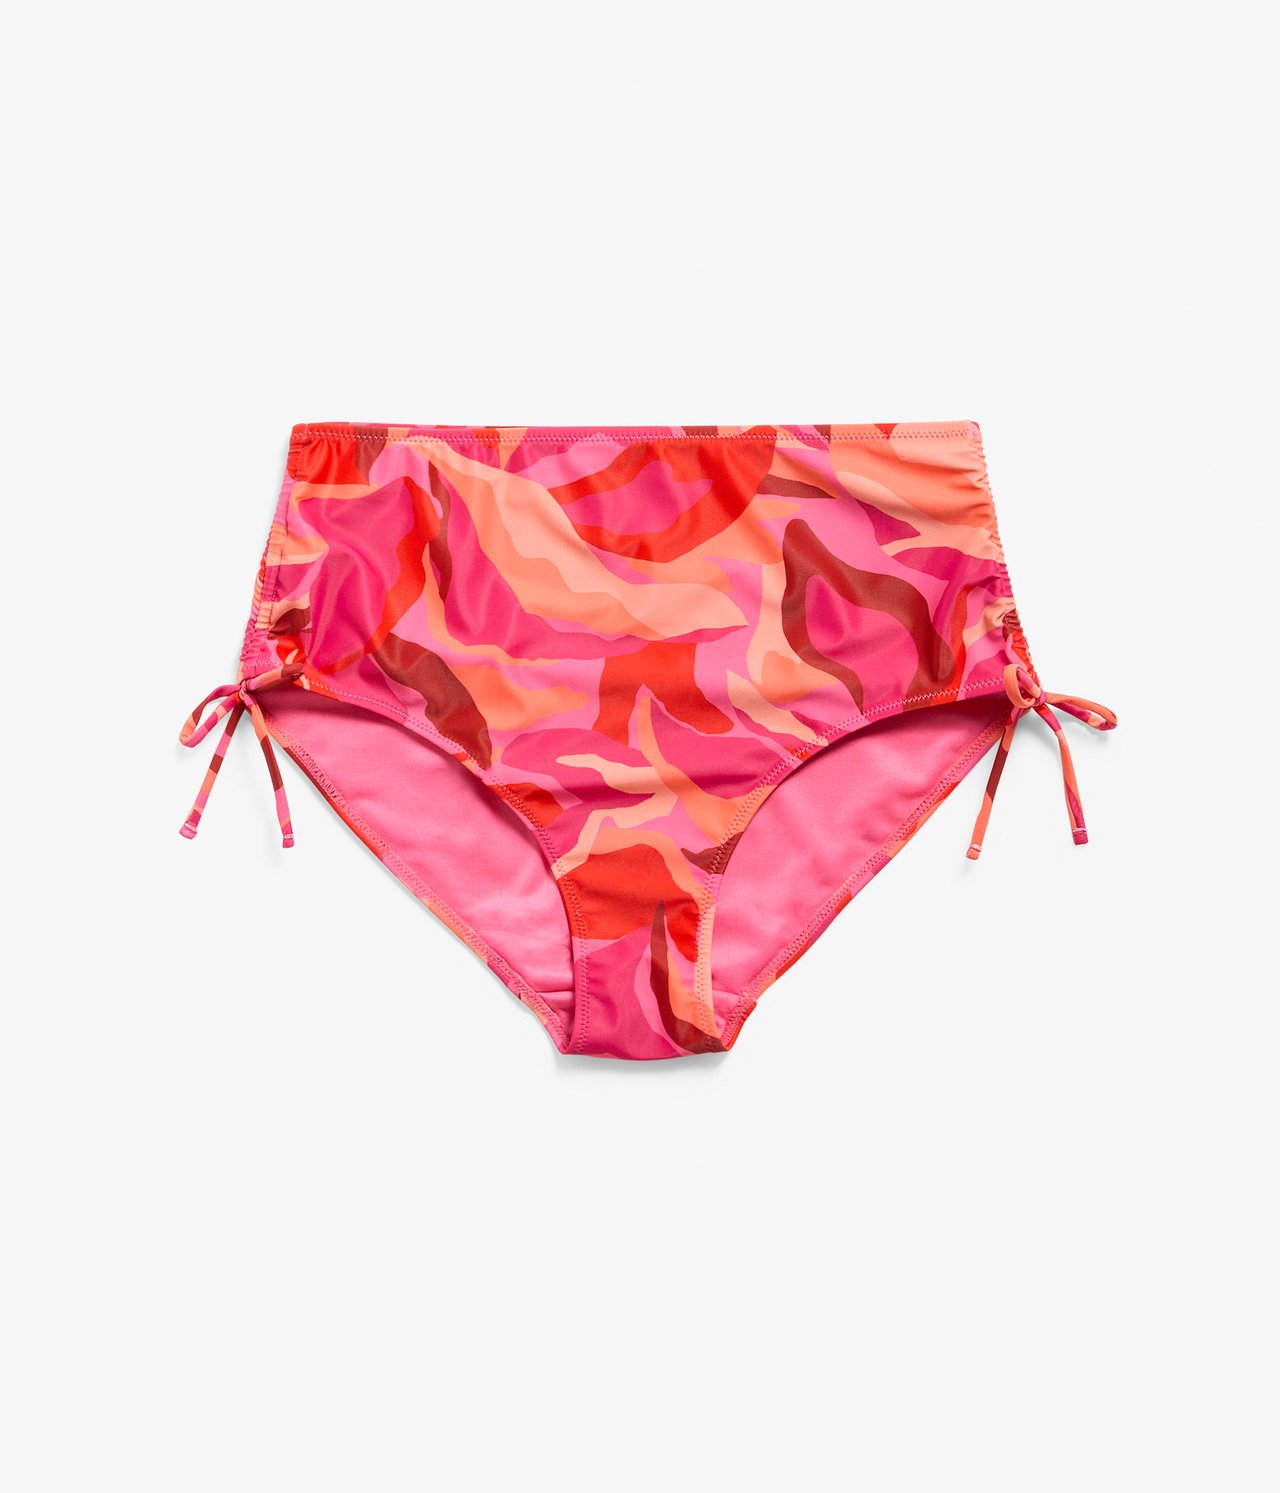 Majtki bikini - Różowy - 4